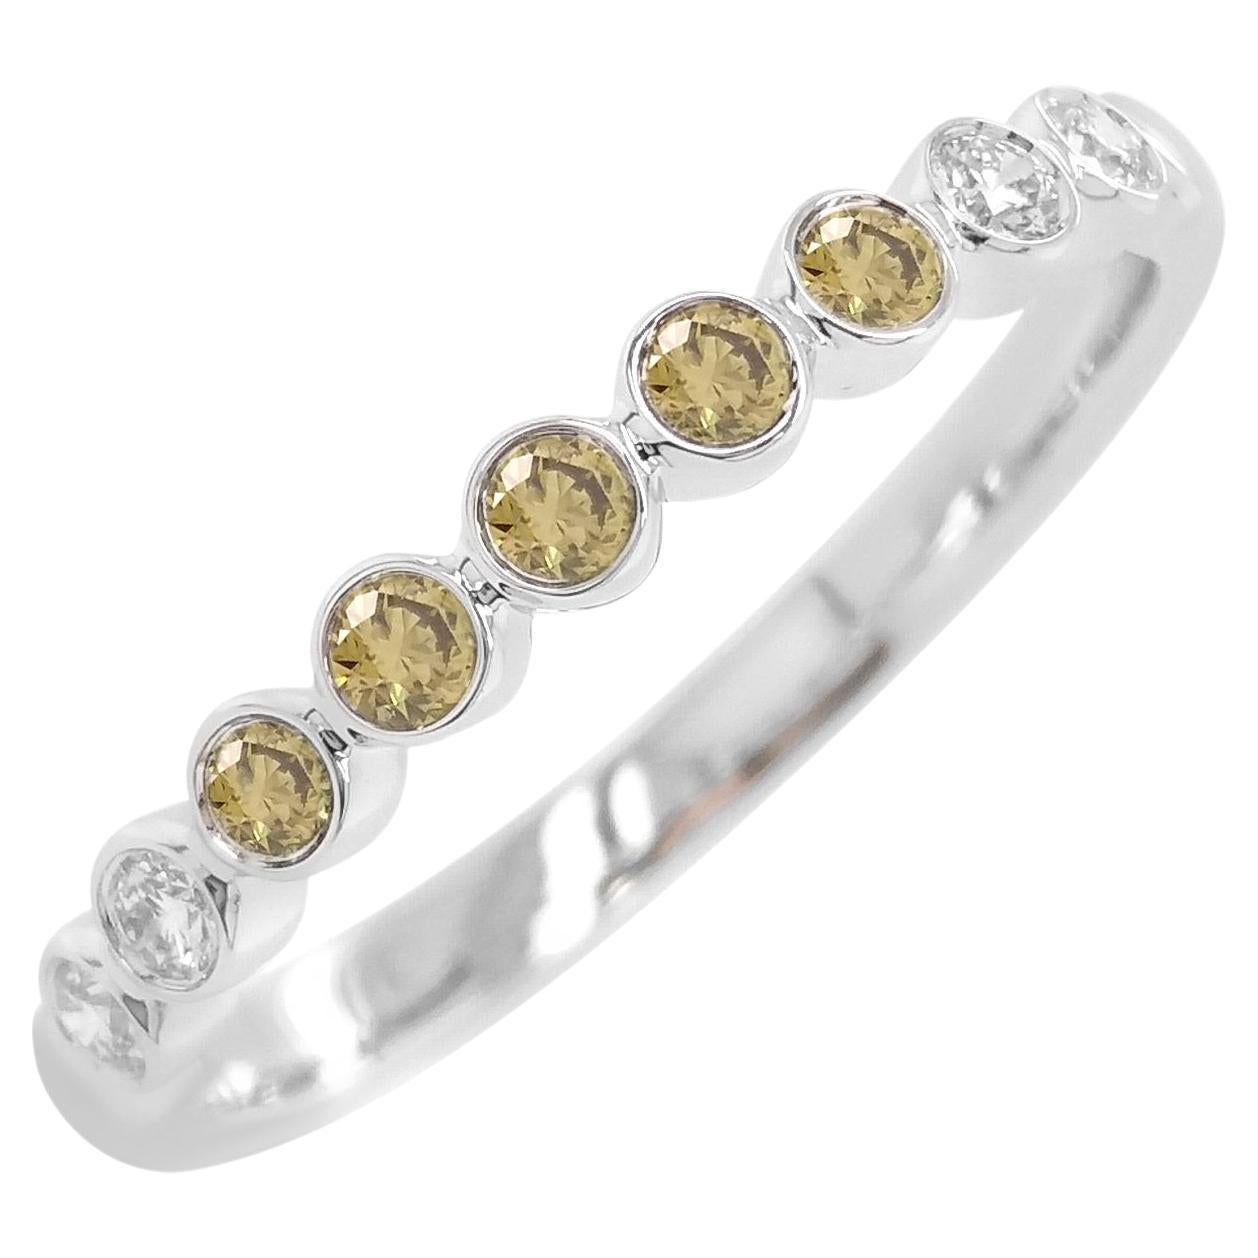 Rare bague à anneau en or 18 carats ornée d'un diamant vert Brilliante